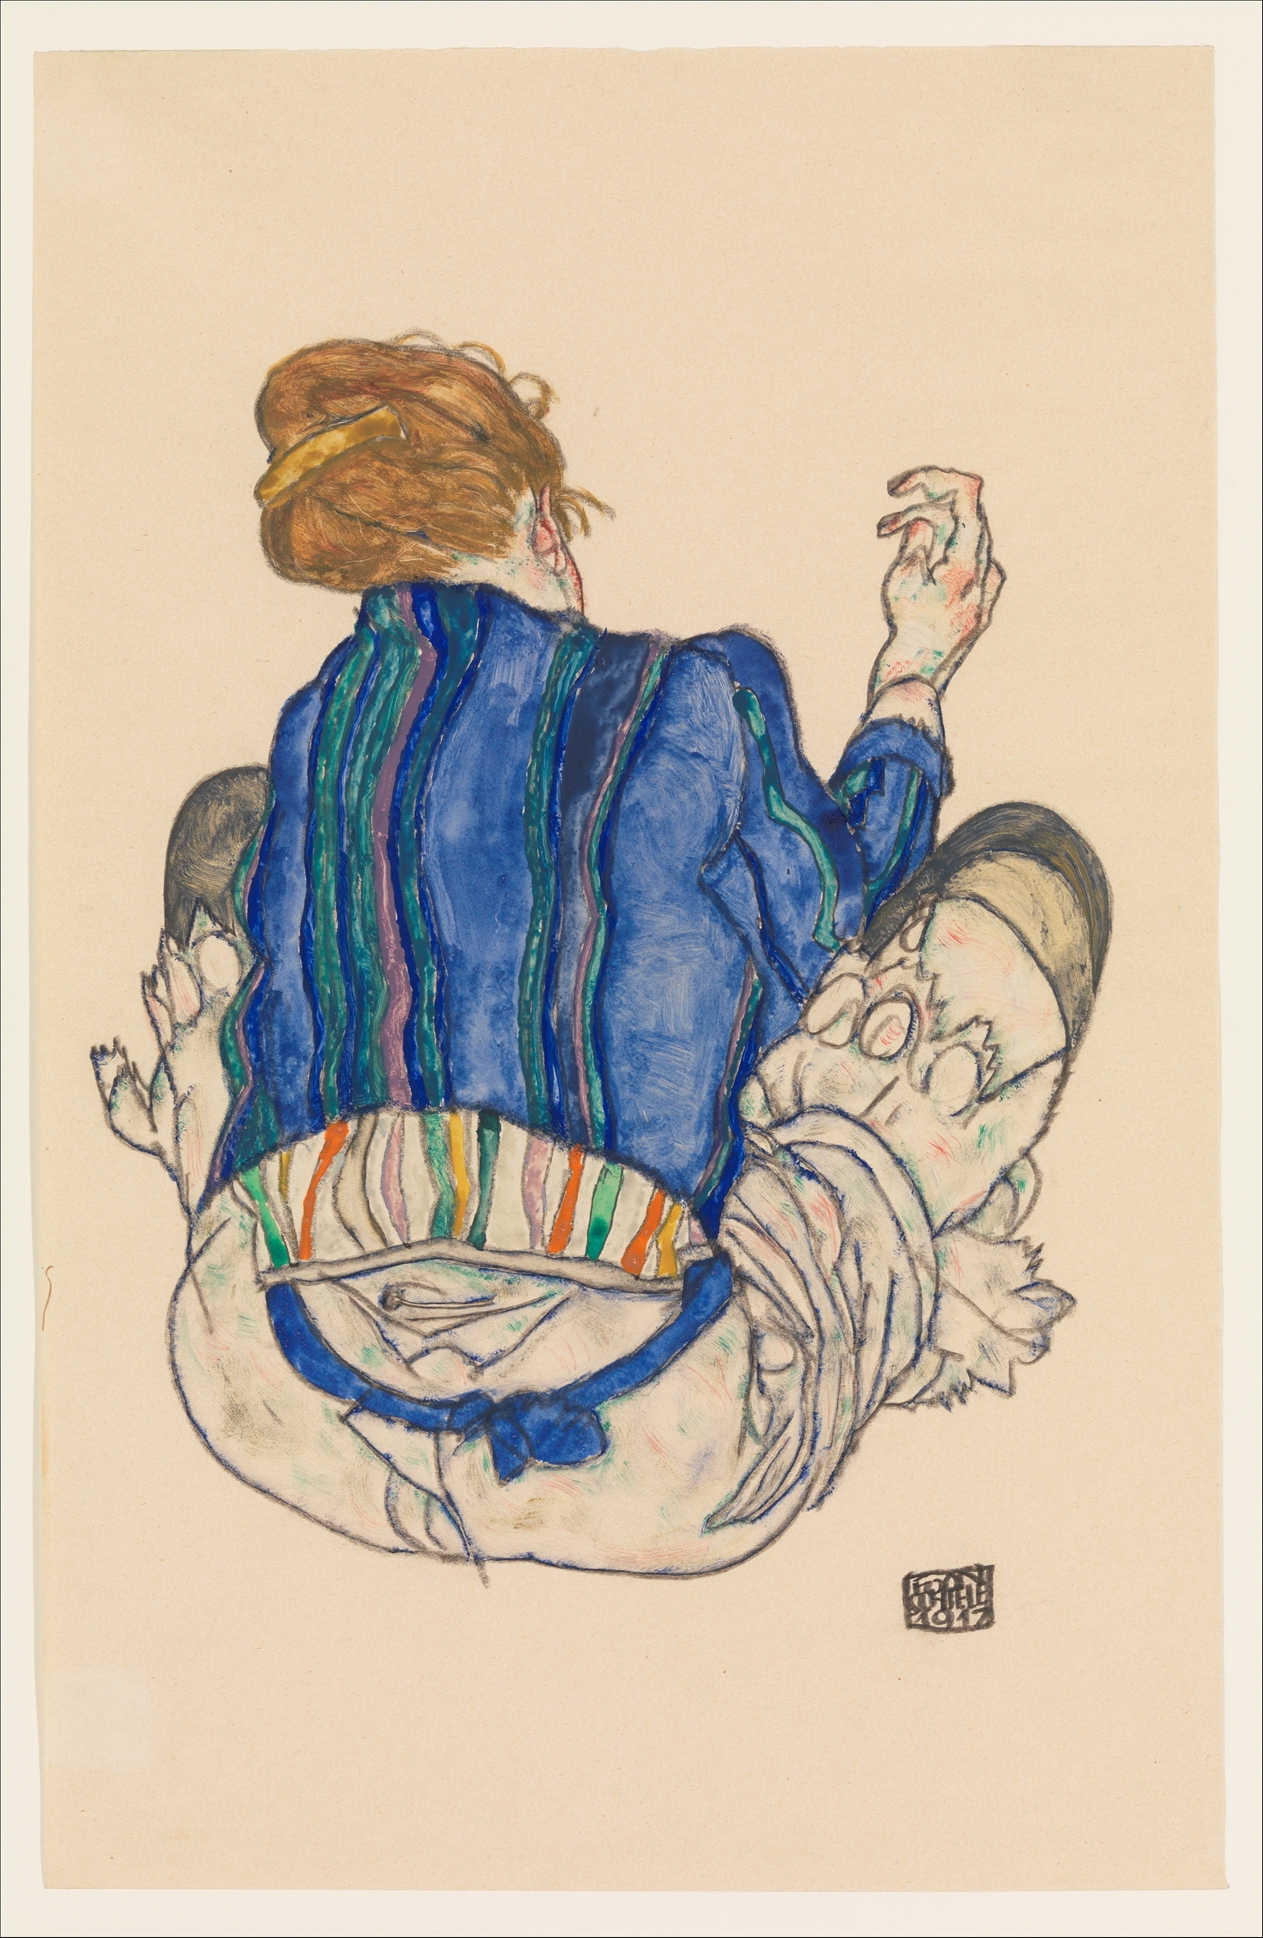 앉아 있는 여인의 뒷모습 by Egon Schiele - 1917 - 46.4 x 29.8 cm 